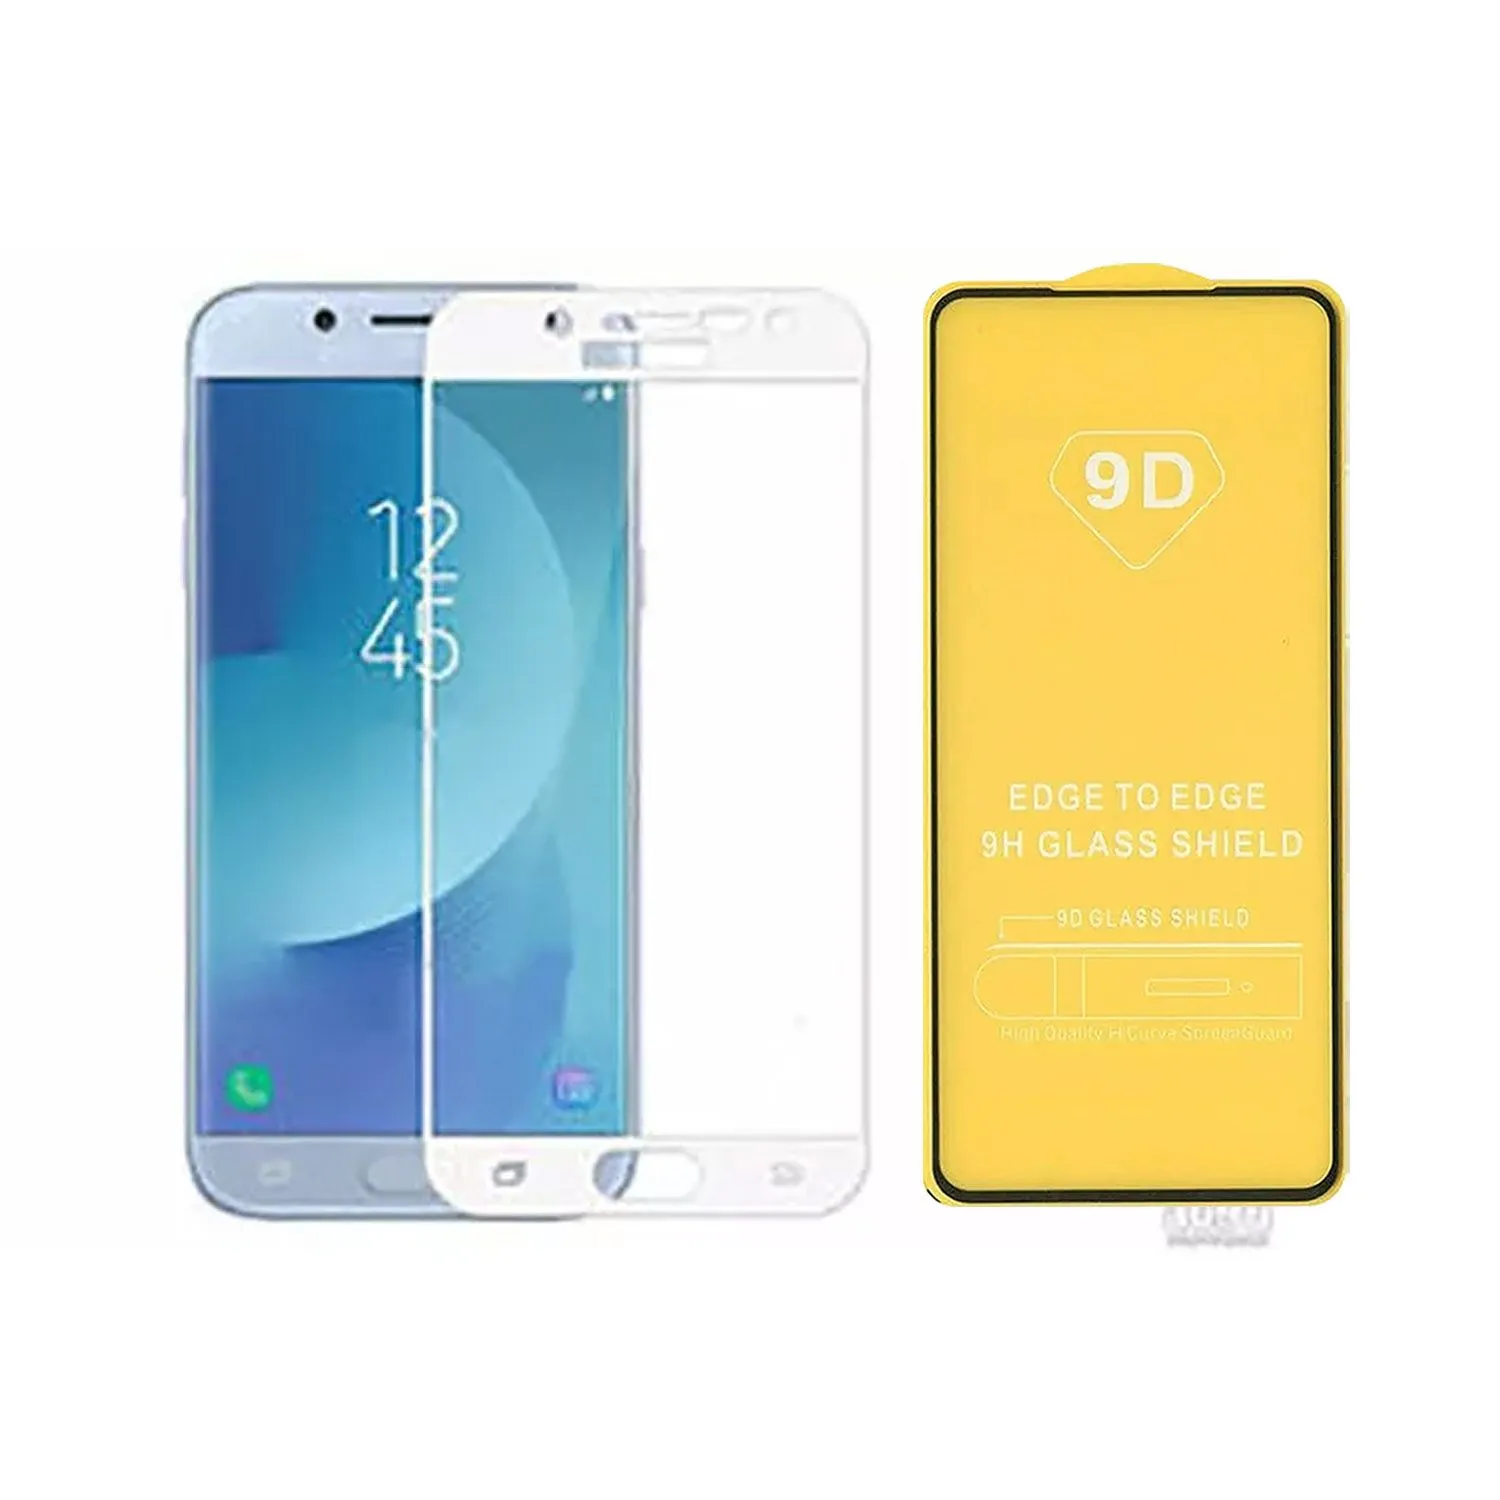 Противоударное стекло LEIWEI для дисплея Samsung Galaxy J5 J500H/DS 9D тех.упаковка (белый)